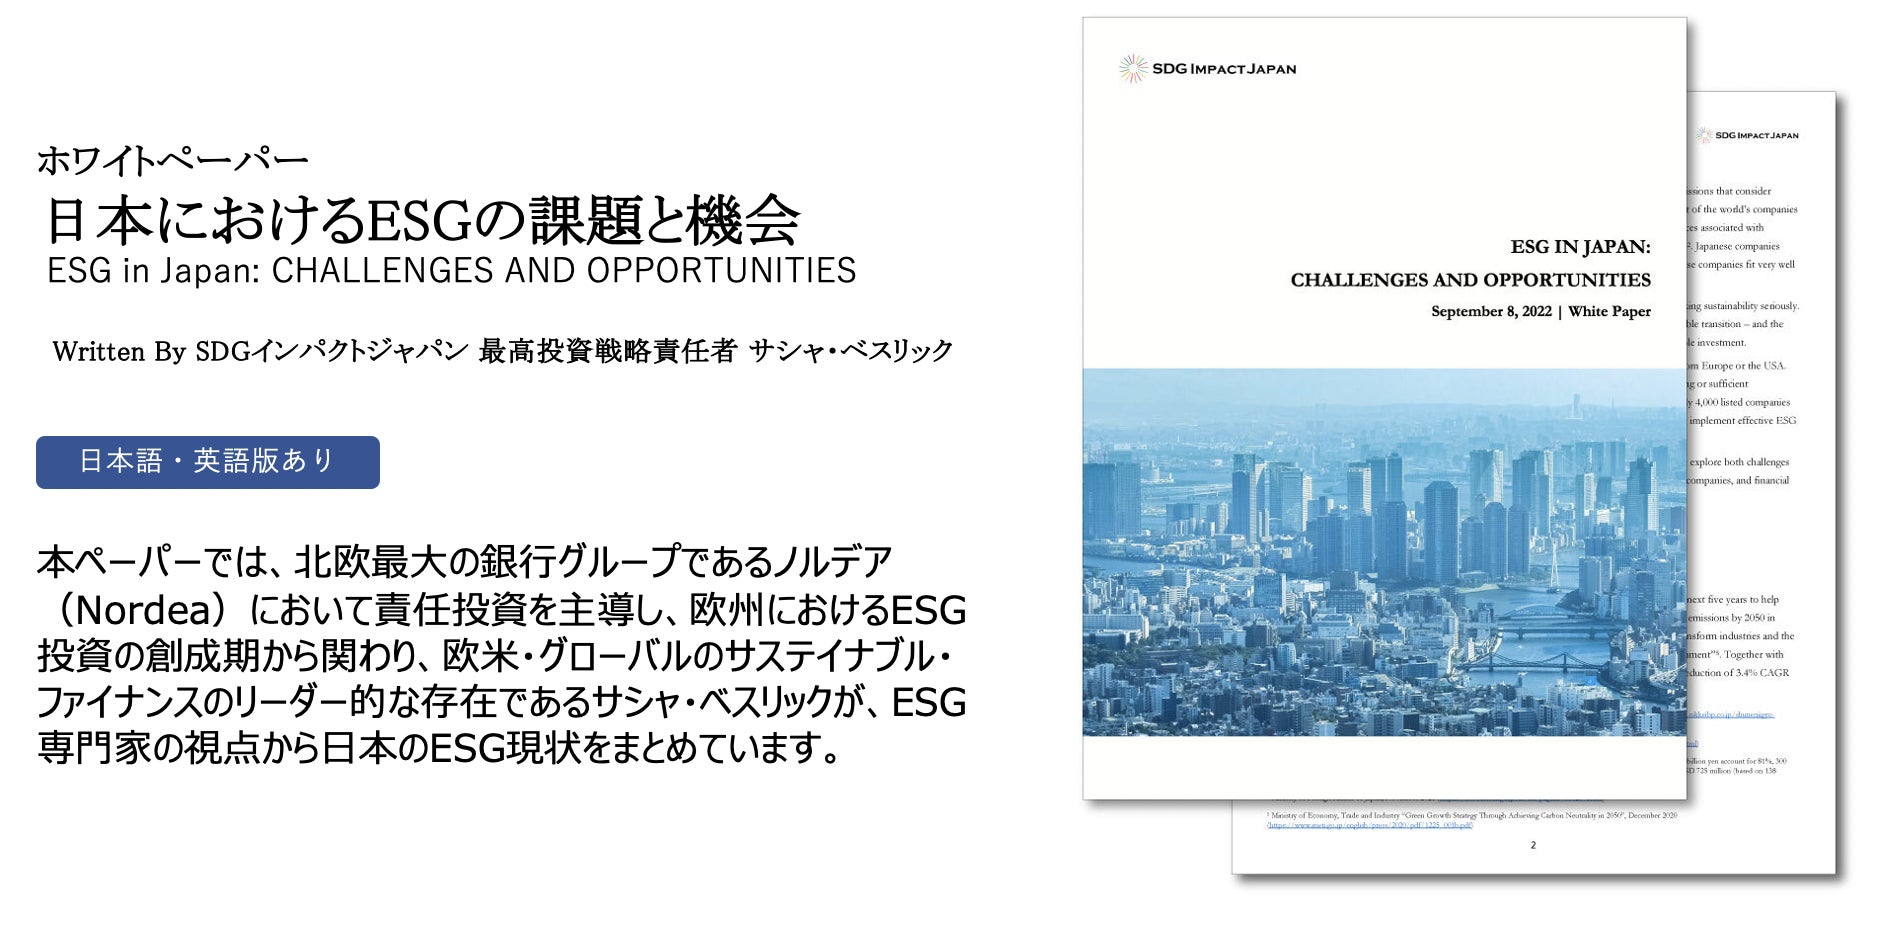 「日本のESGの現状に関するホワイトペーパー “ESG in Japan: CHALLENGES AND OPPORTUNITIES ”(邦題: 日本におけるESGの課題と機会)を公開」のサブ画像1